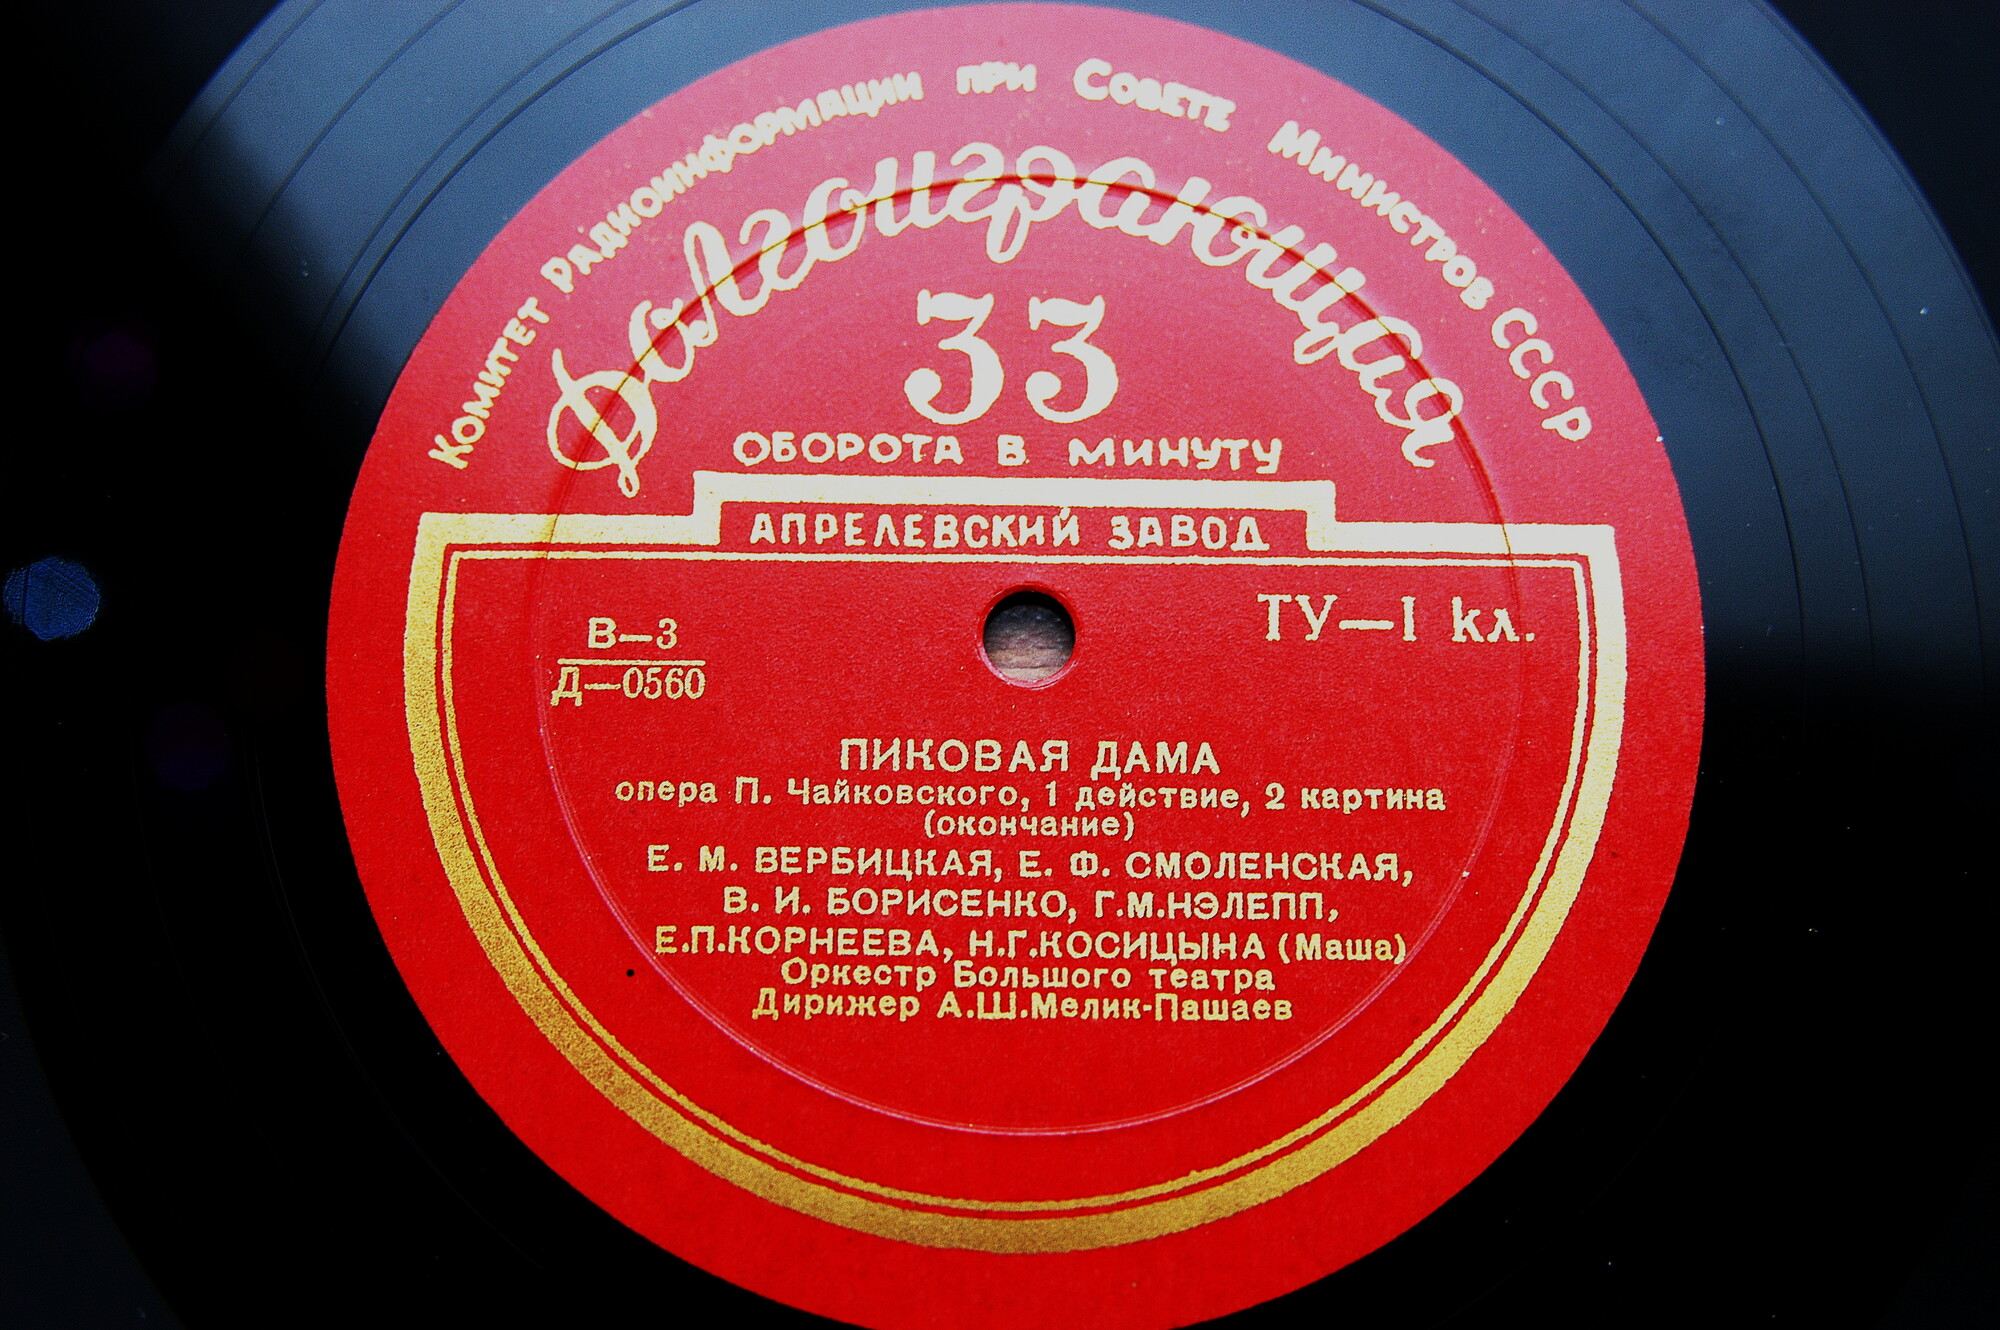 П. ЧАЙКОВСКИЙ (1840-1893): Пиковая дама, опера в 3 д. (А. Мелик-Пашаев)